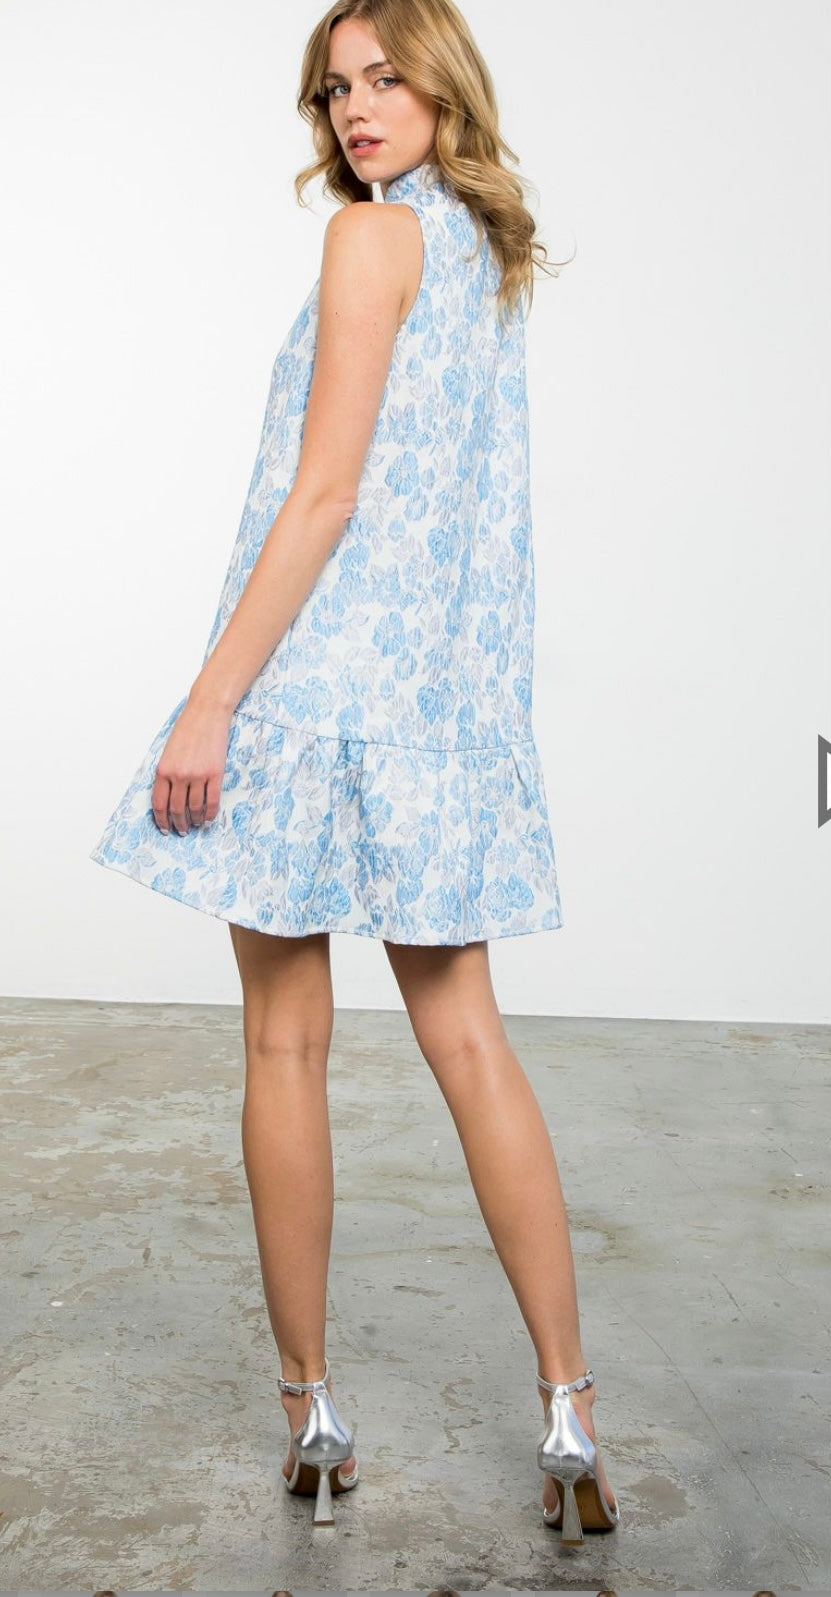 Blue Sleeveless Textured Dress